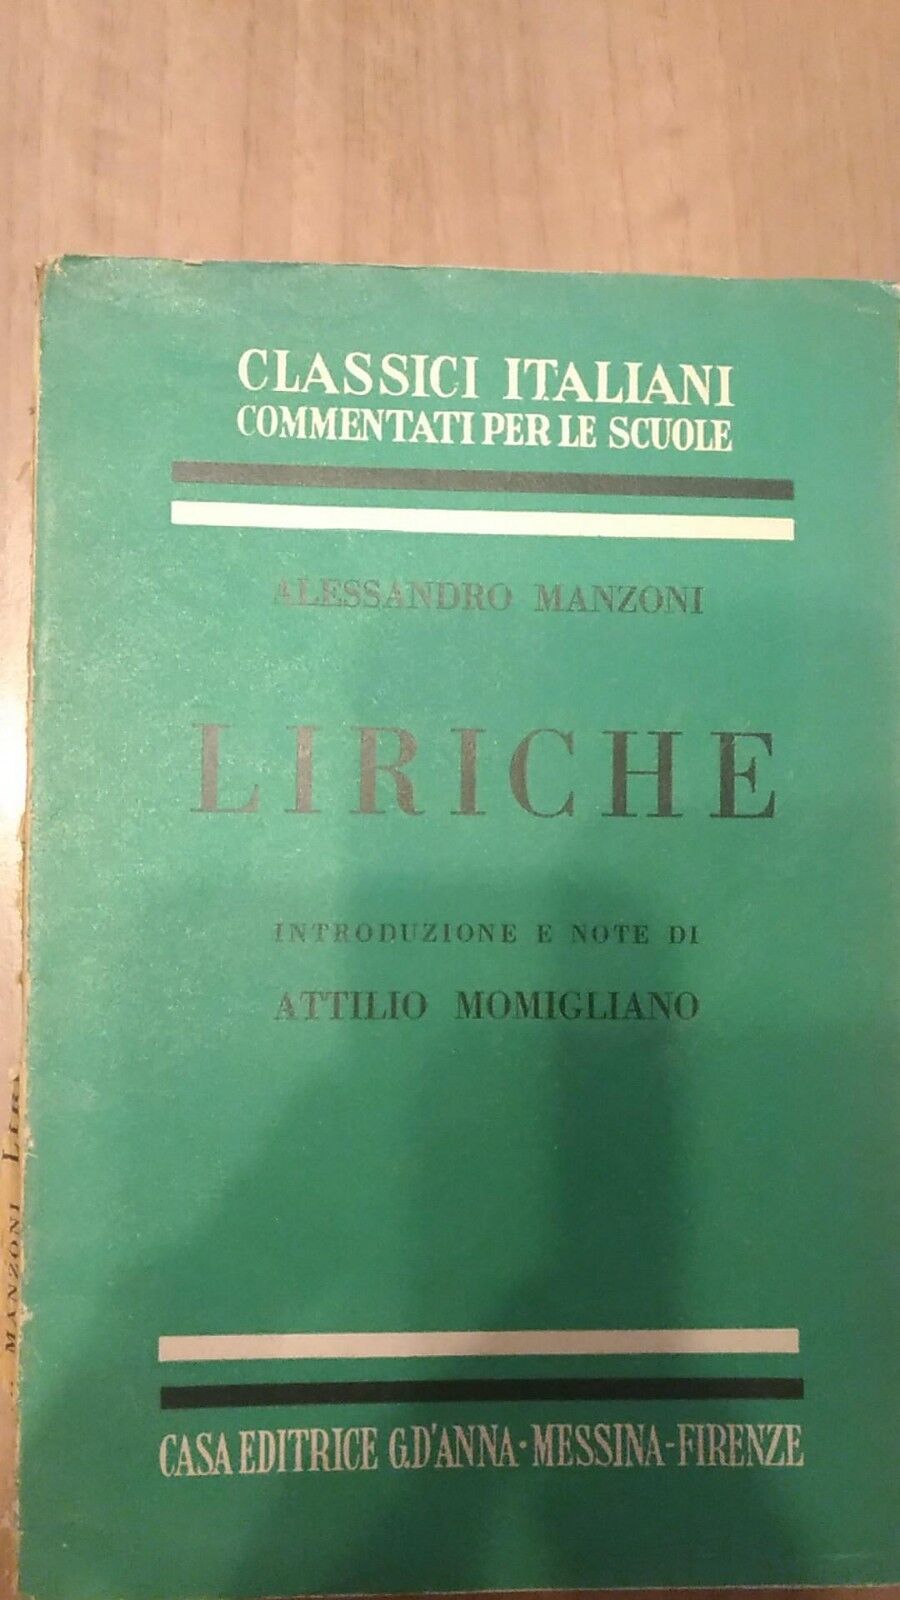 Alessandro Manzoni Liriche - Attilio Momigliano,  1956,  G.d'Anna - S